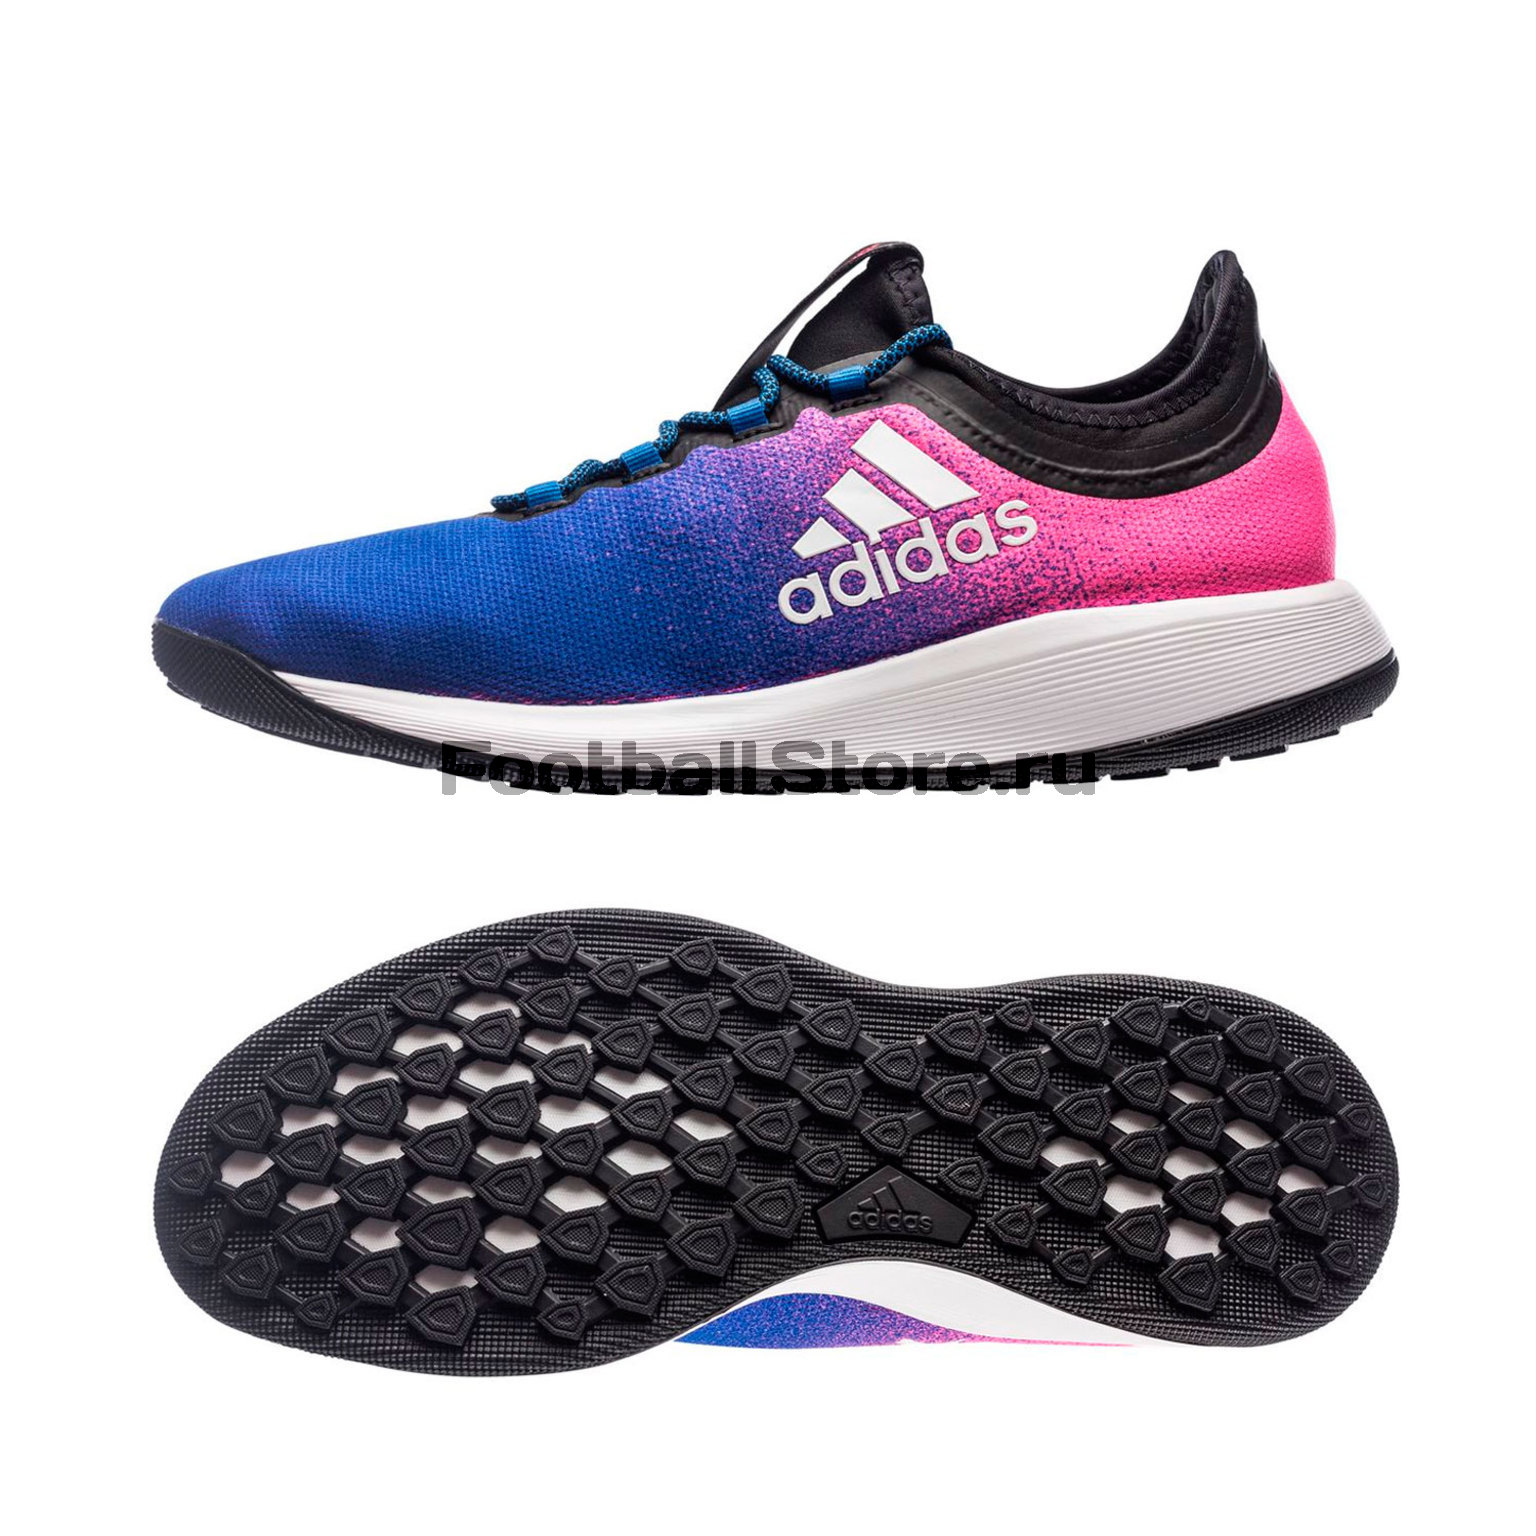 Футбольная обувь Adidas X Tango 16.2 TR BA9720 – купить футзалки в интернет  магазине footballstore, цена, фото